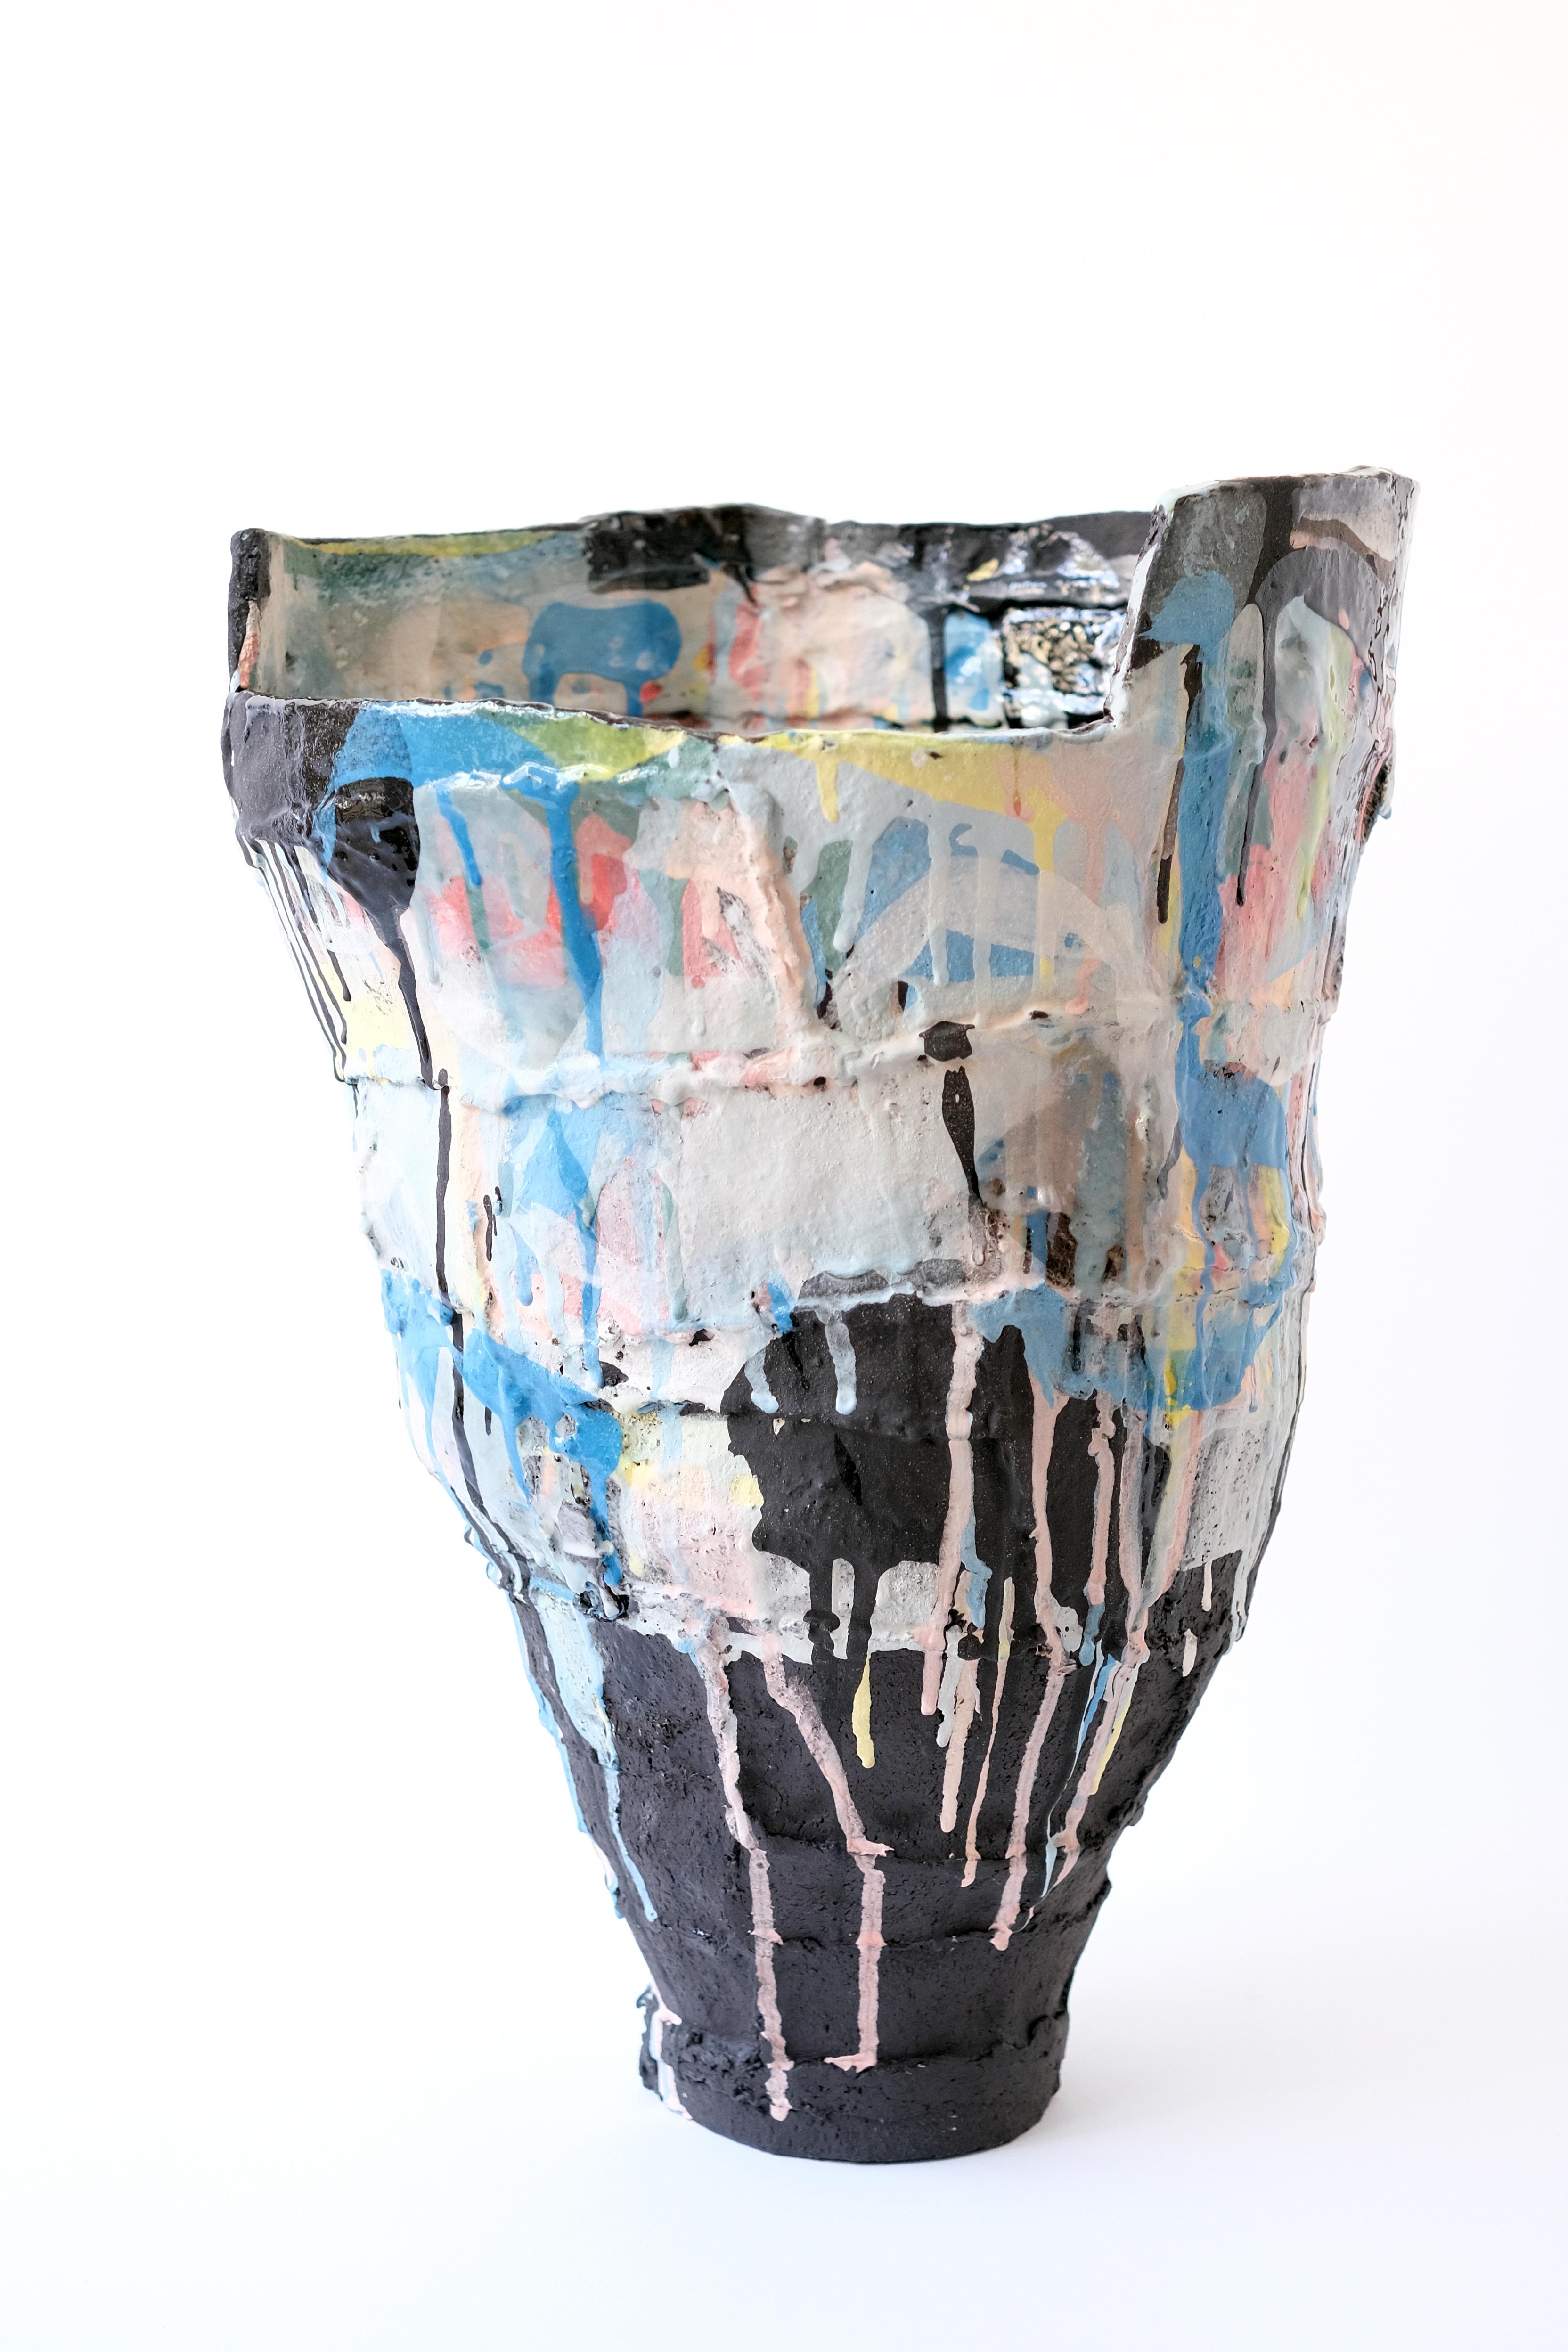 Ardea Cinerea-Vase von Elke Sada
Einzigartiges Stück
Abmessungen: B 31 x T 32 x H 45 cm
MATERIALIEN: schwarzer Rillenton, farbige Schlicker, transparente Glasur.

Das Faszinierende und Auffallende an der Keramikkunst von Elke Sada ist nicht nur die